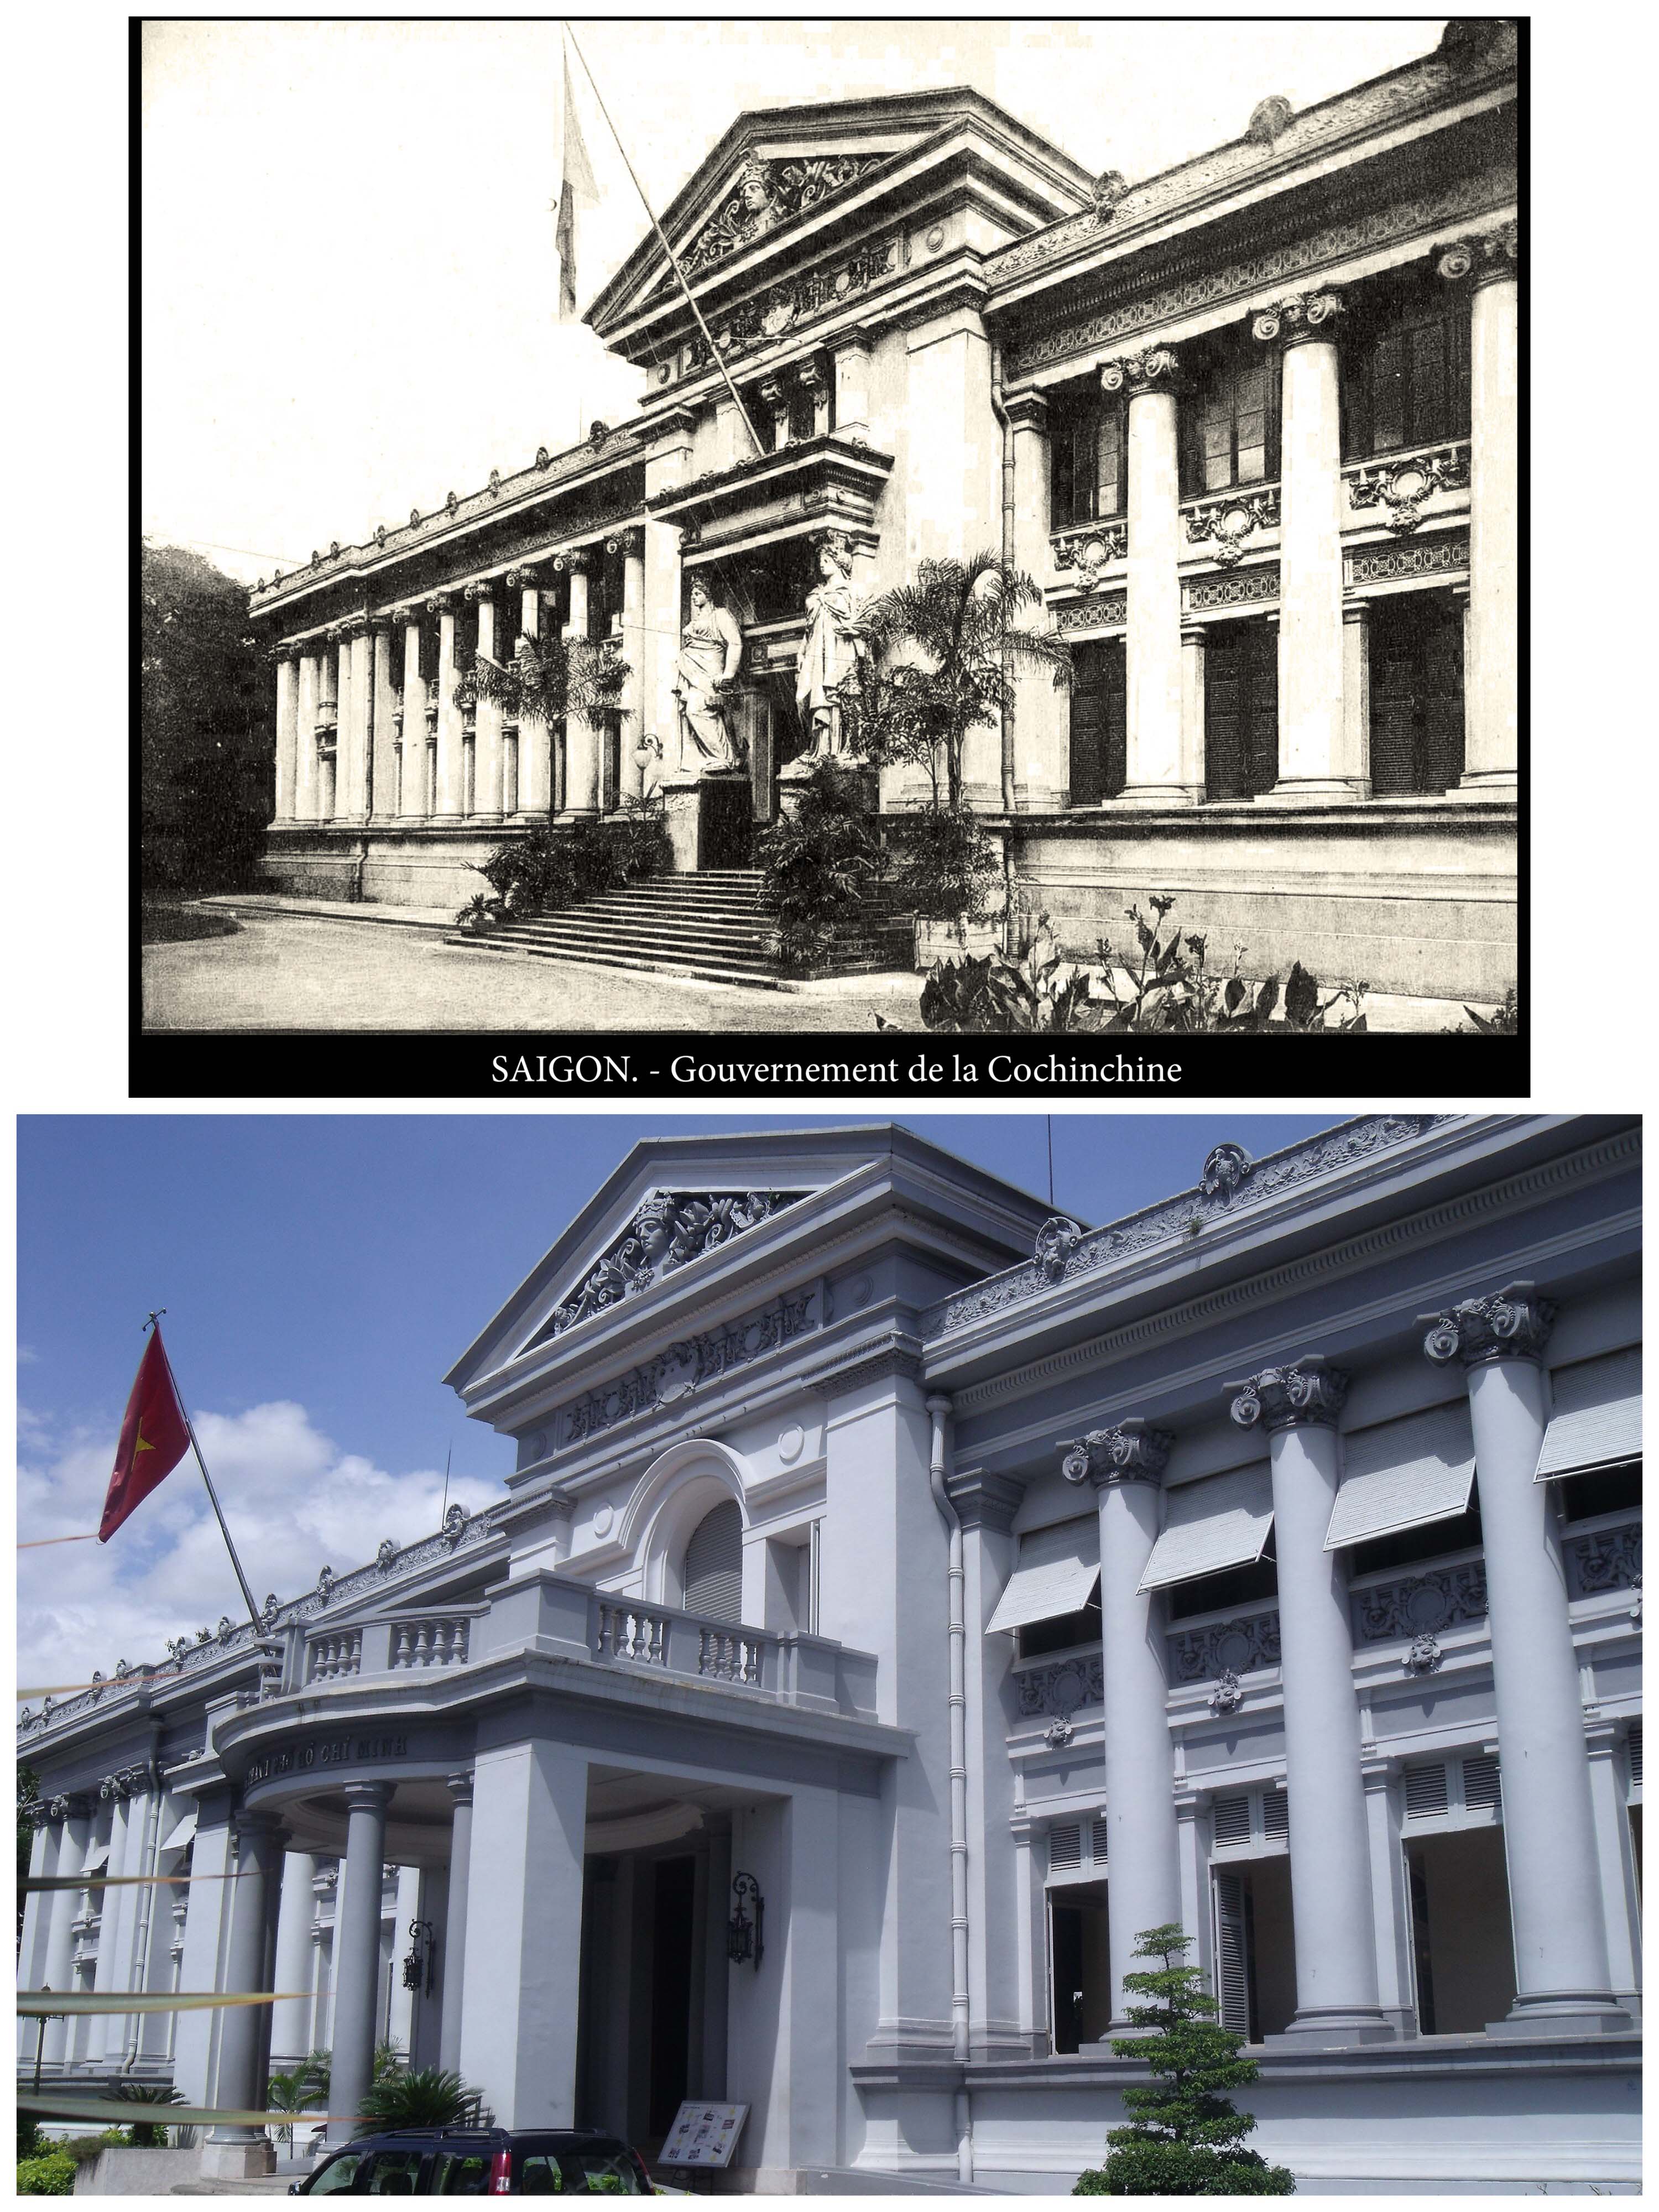 Dinh Thống đốc Nam Kỳ (Dinh Gia Long) thời kì đầu mới xây dựng (Nguồn TTLTQGII) và Bảo tàng TPHCM ngày nay (Ảnh: Nguyễn Nghĩa)